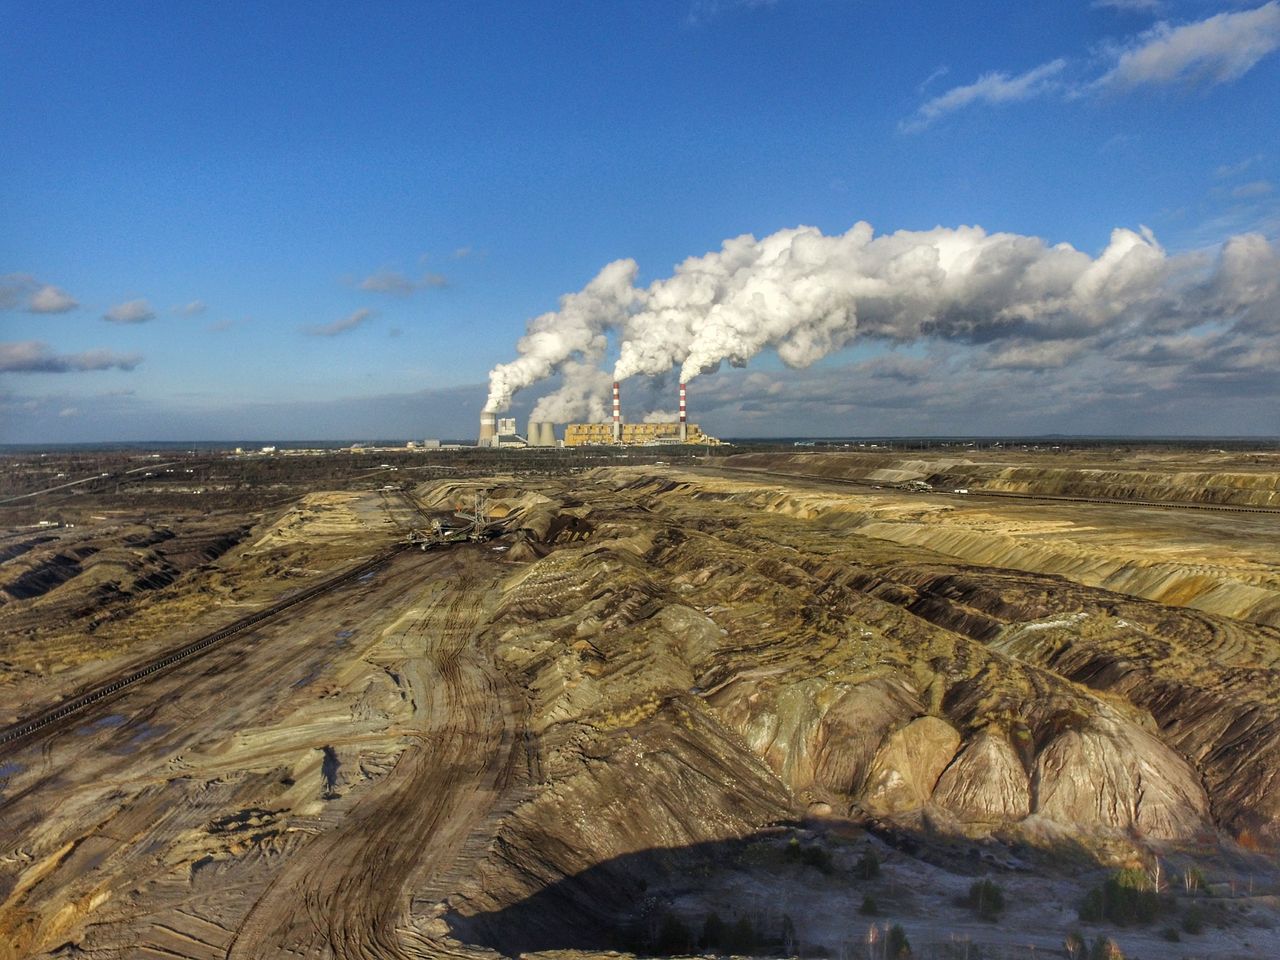 "Czemu rezygnować z węgla, skoro USA i Chiny spalają go więcej". To szkodliwe i błędne myślenie